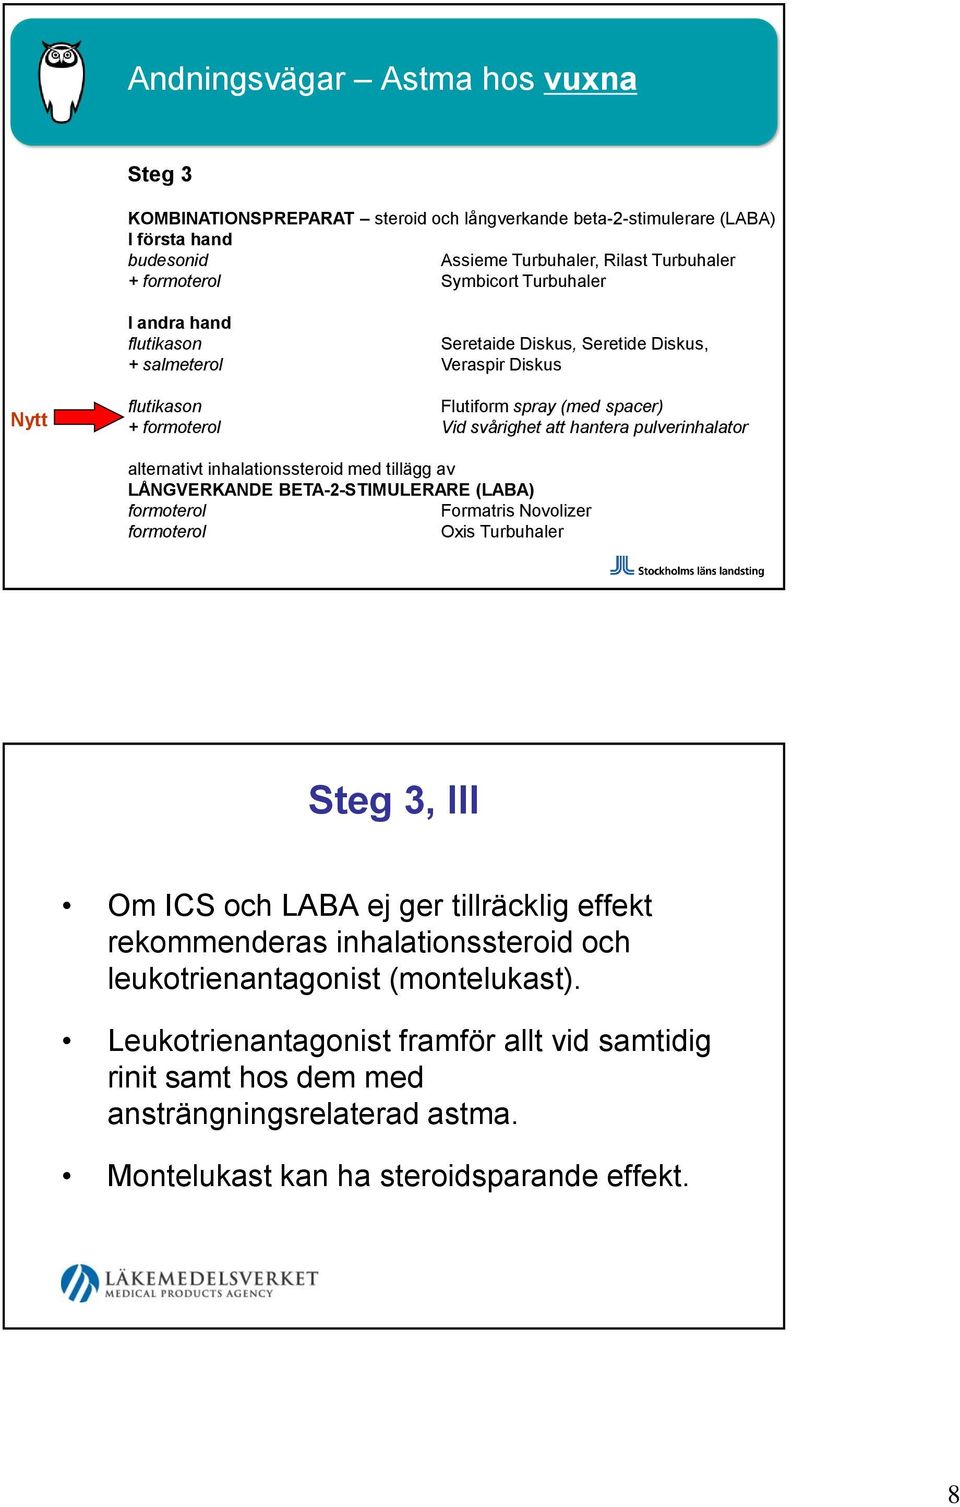 alternativt inhalationssteroid med tillägg av LÅNGVERKANDE BETA-2-STIMULERARE (LABA) formoterol Formatris Novolizer formoterol Oxis Turbuhaler Steg 3, III Om ICS och LABA ej ger tillräcklig effekt